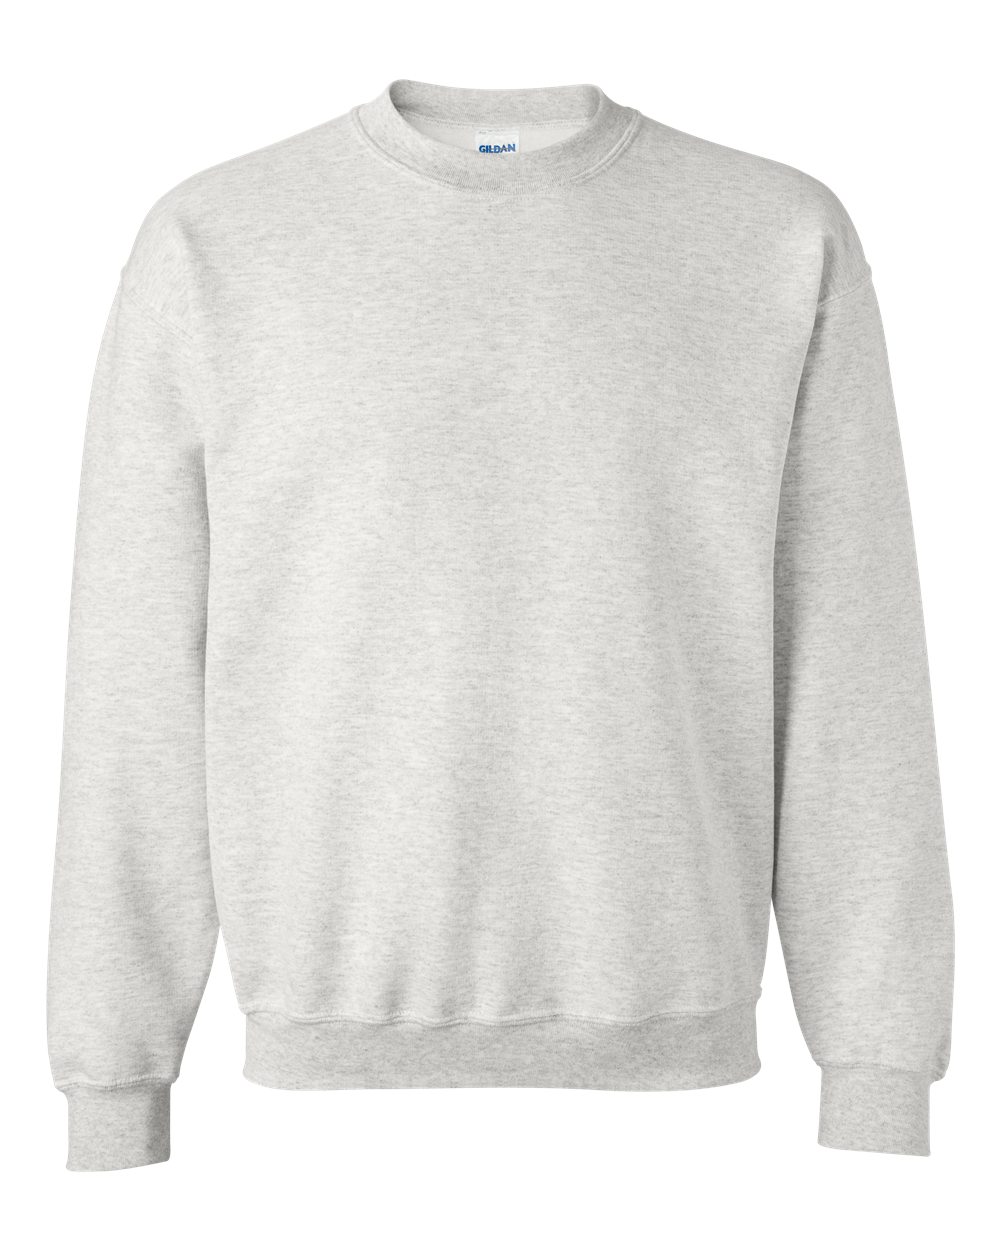 Fleece DryBlend Crewneck Sweatshirt - image 1 of 5